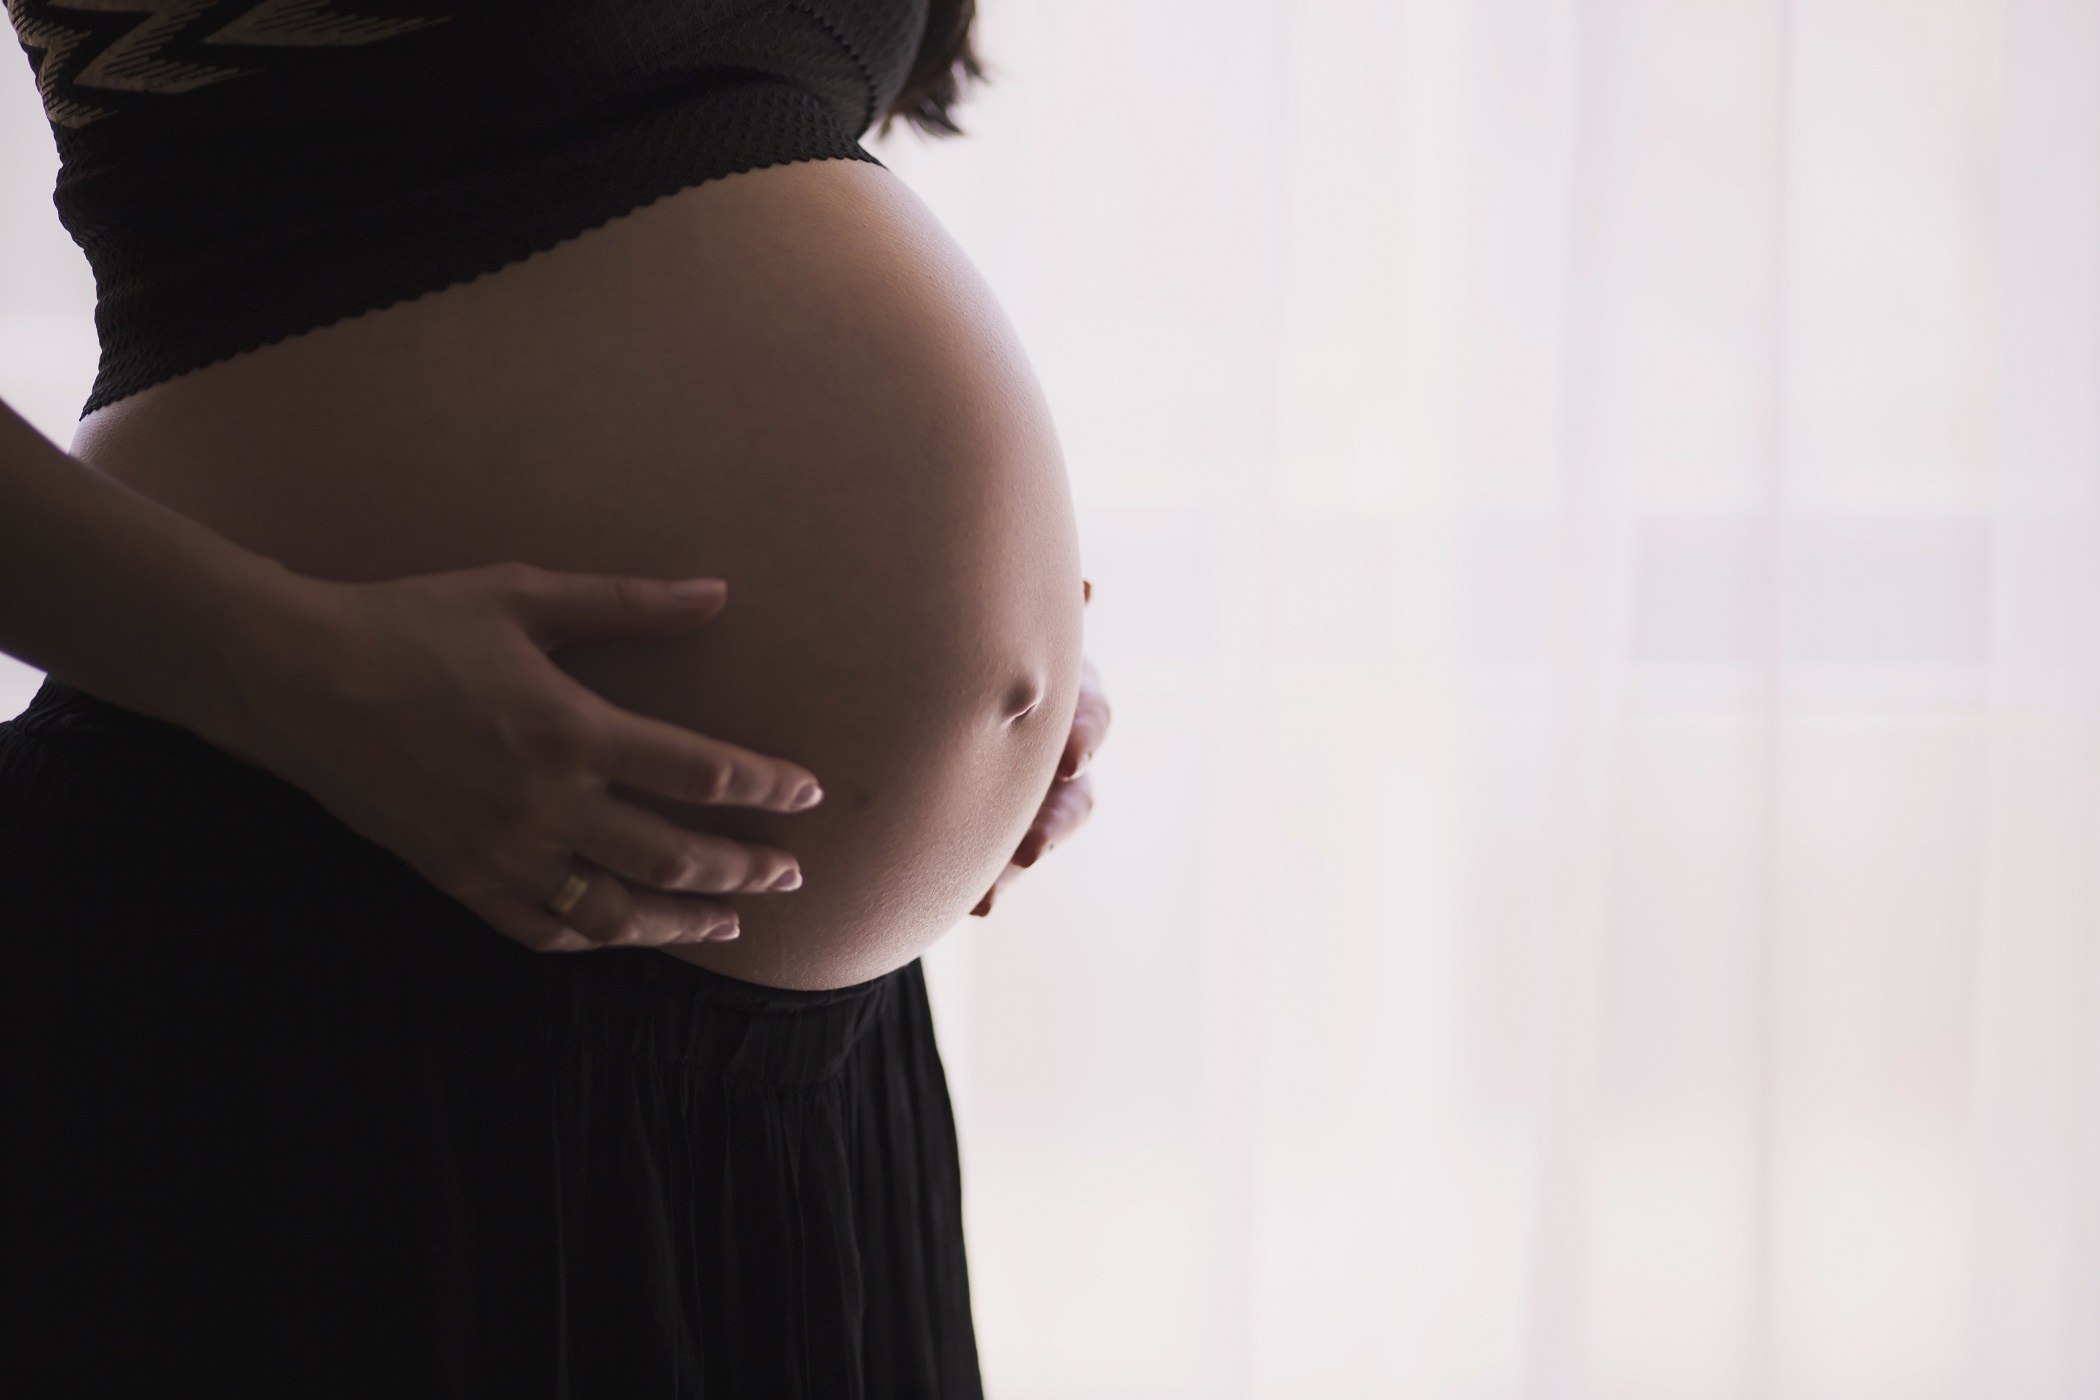 embarazo riesgos vida salud